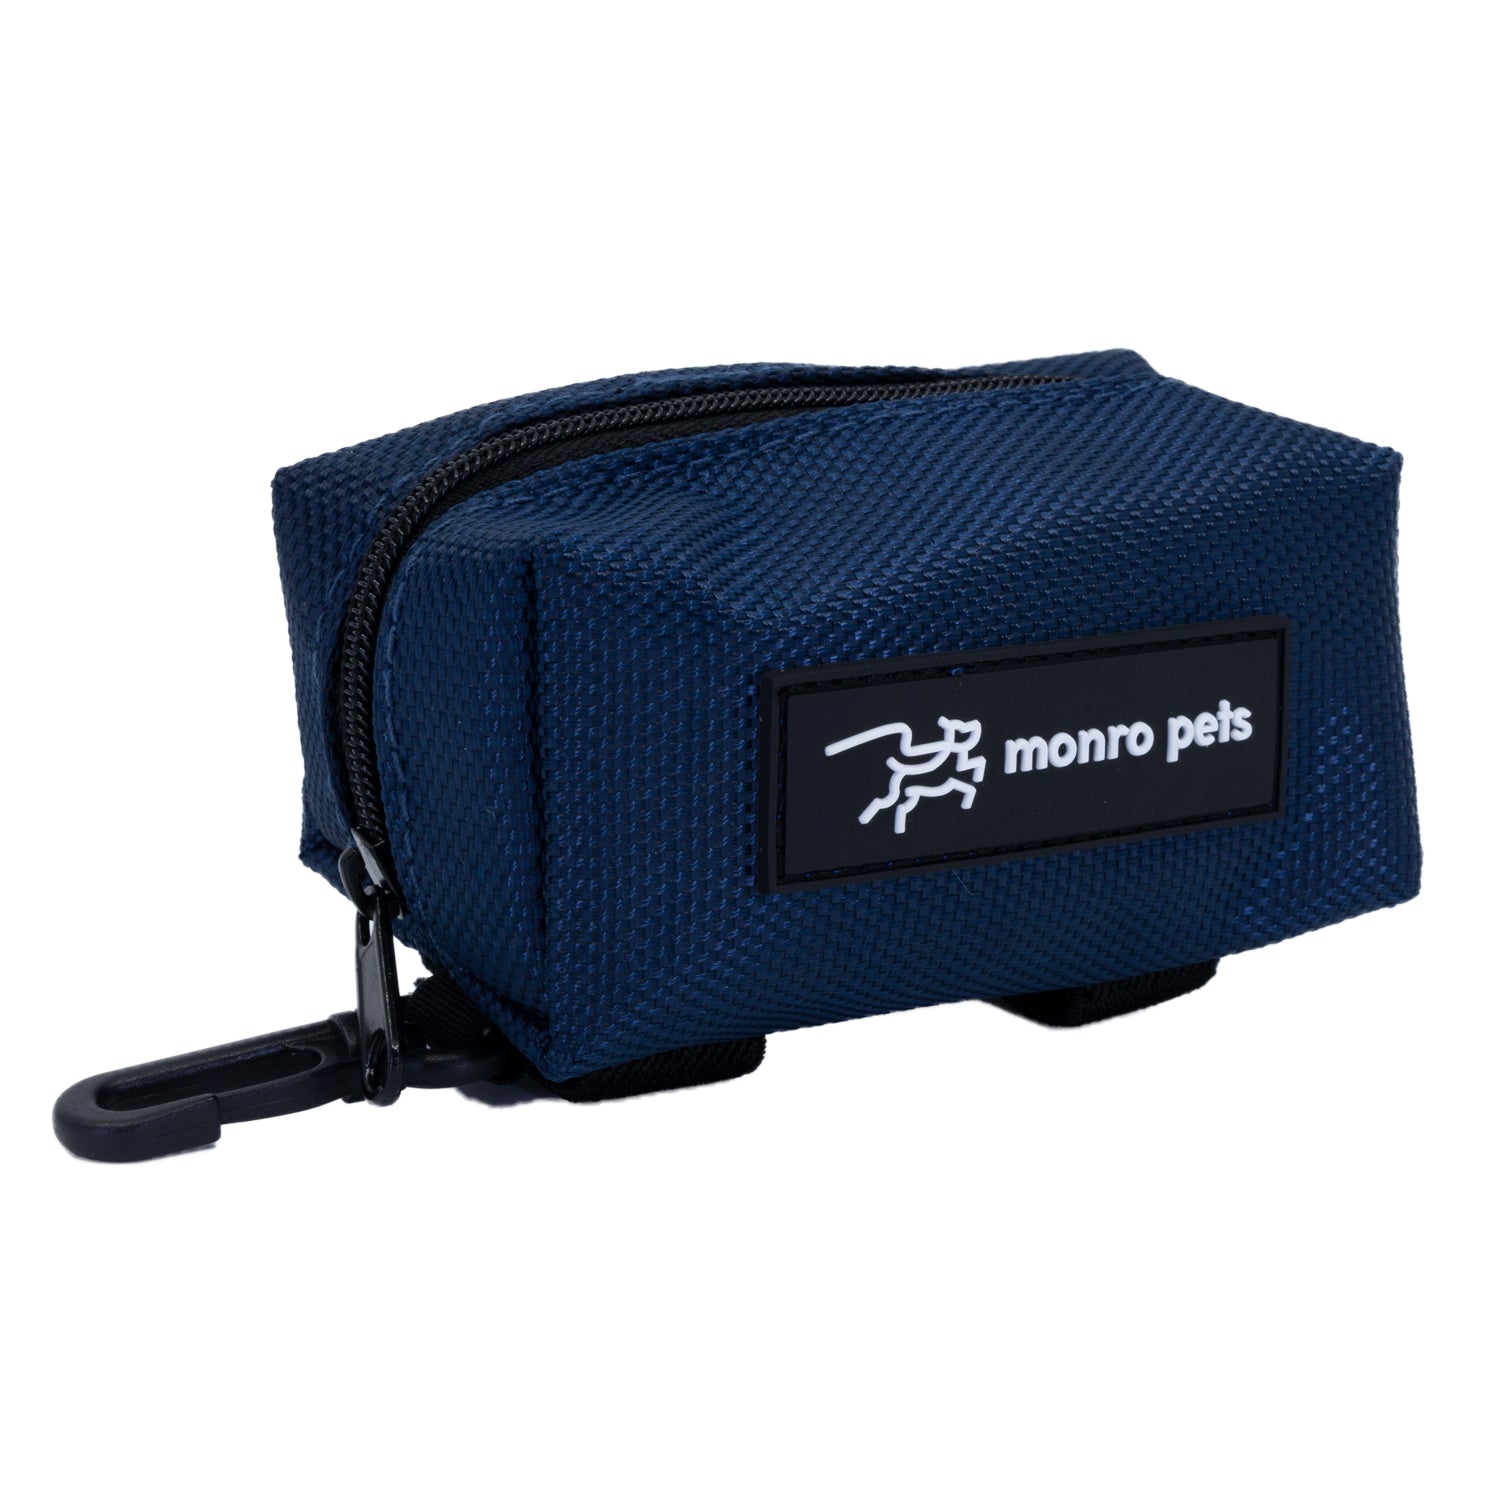 dog-bag-carrier-poop-bag-holder-midnight-blue